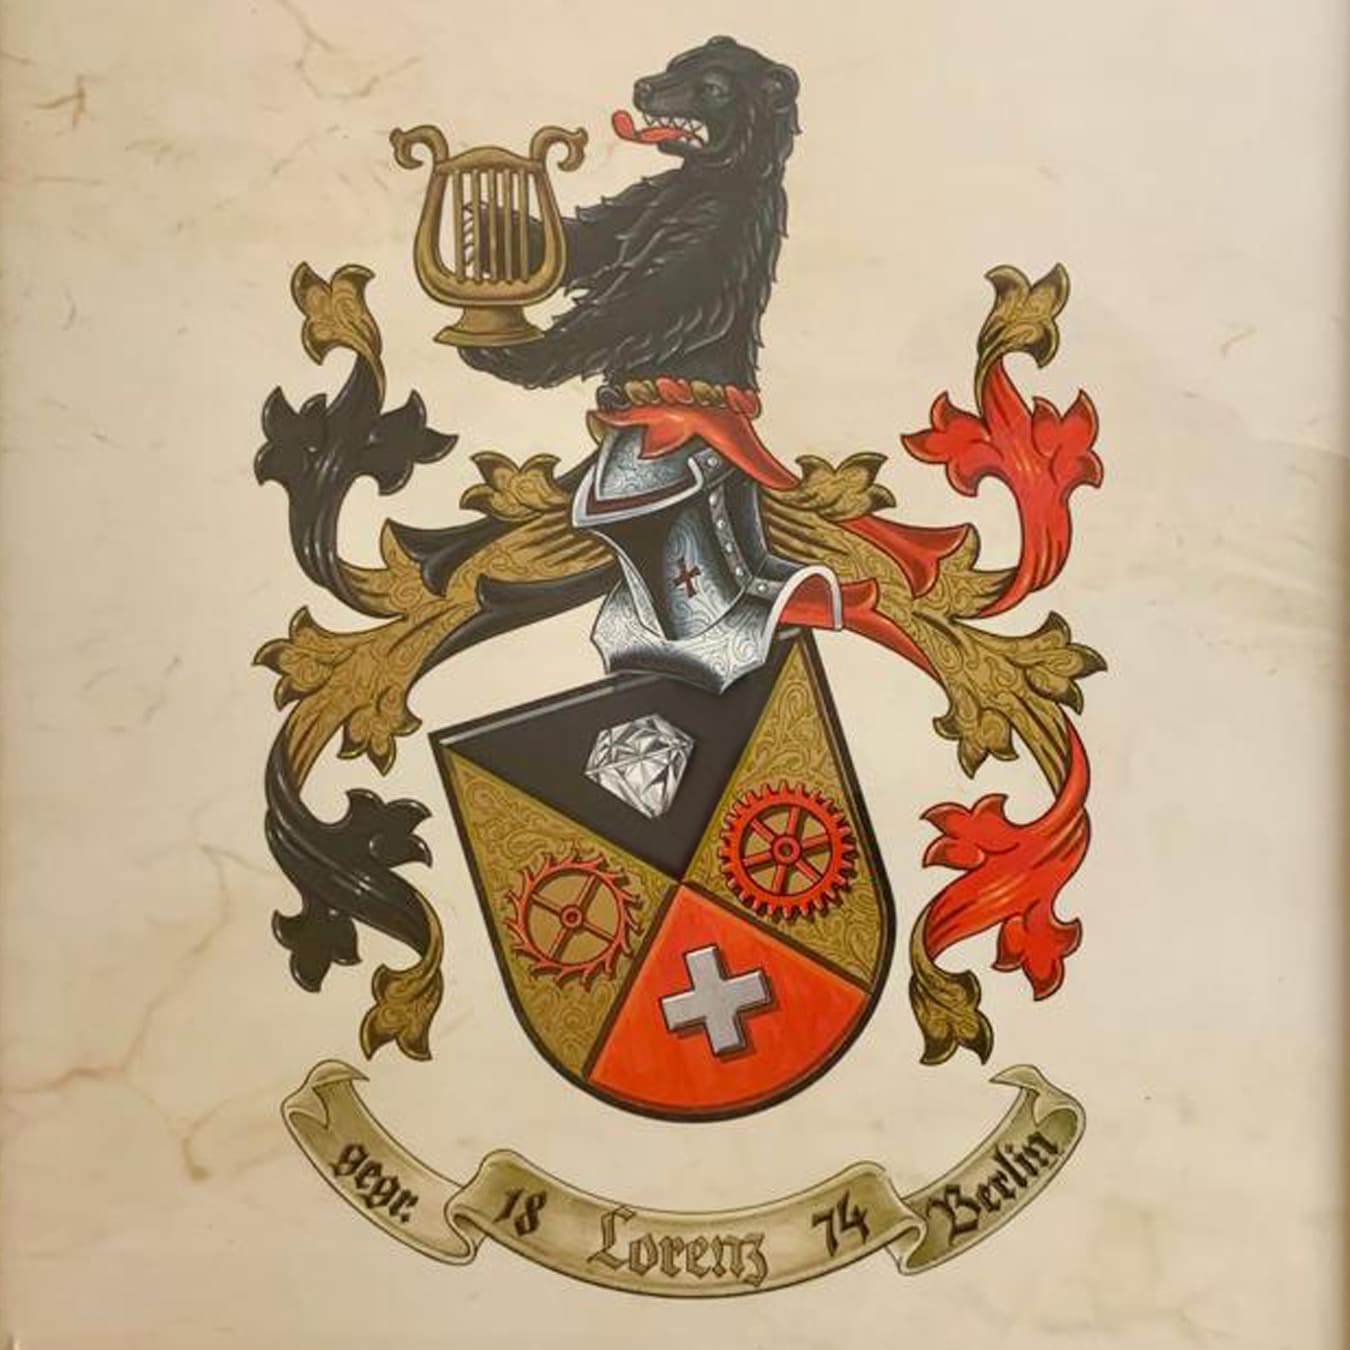 Wappen der Familie Lorenz. Die Elemente zeigen die Verbundenheit zur Schweiz und zu Deutschland.